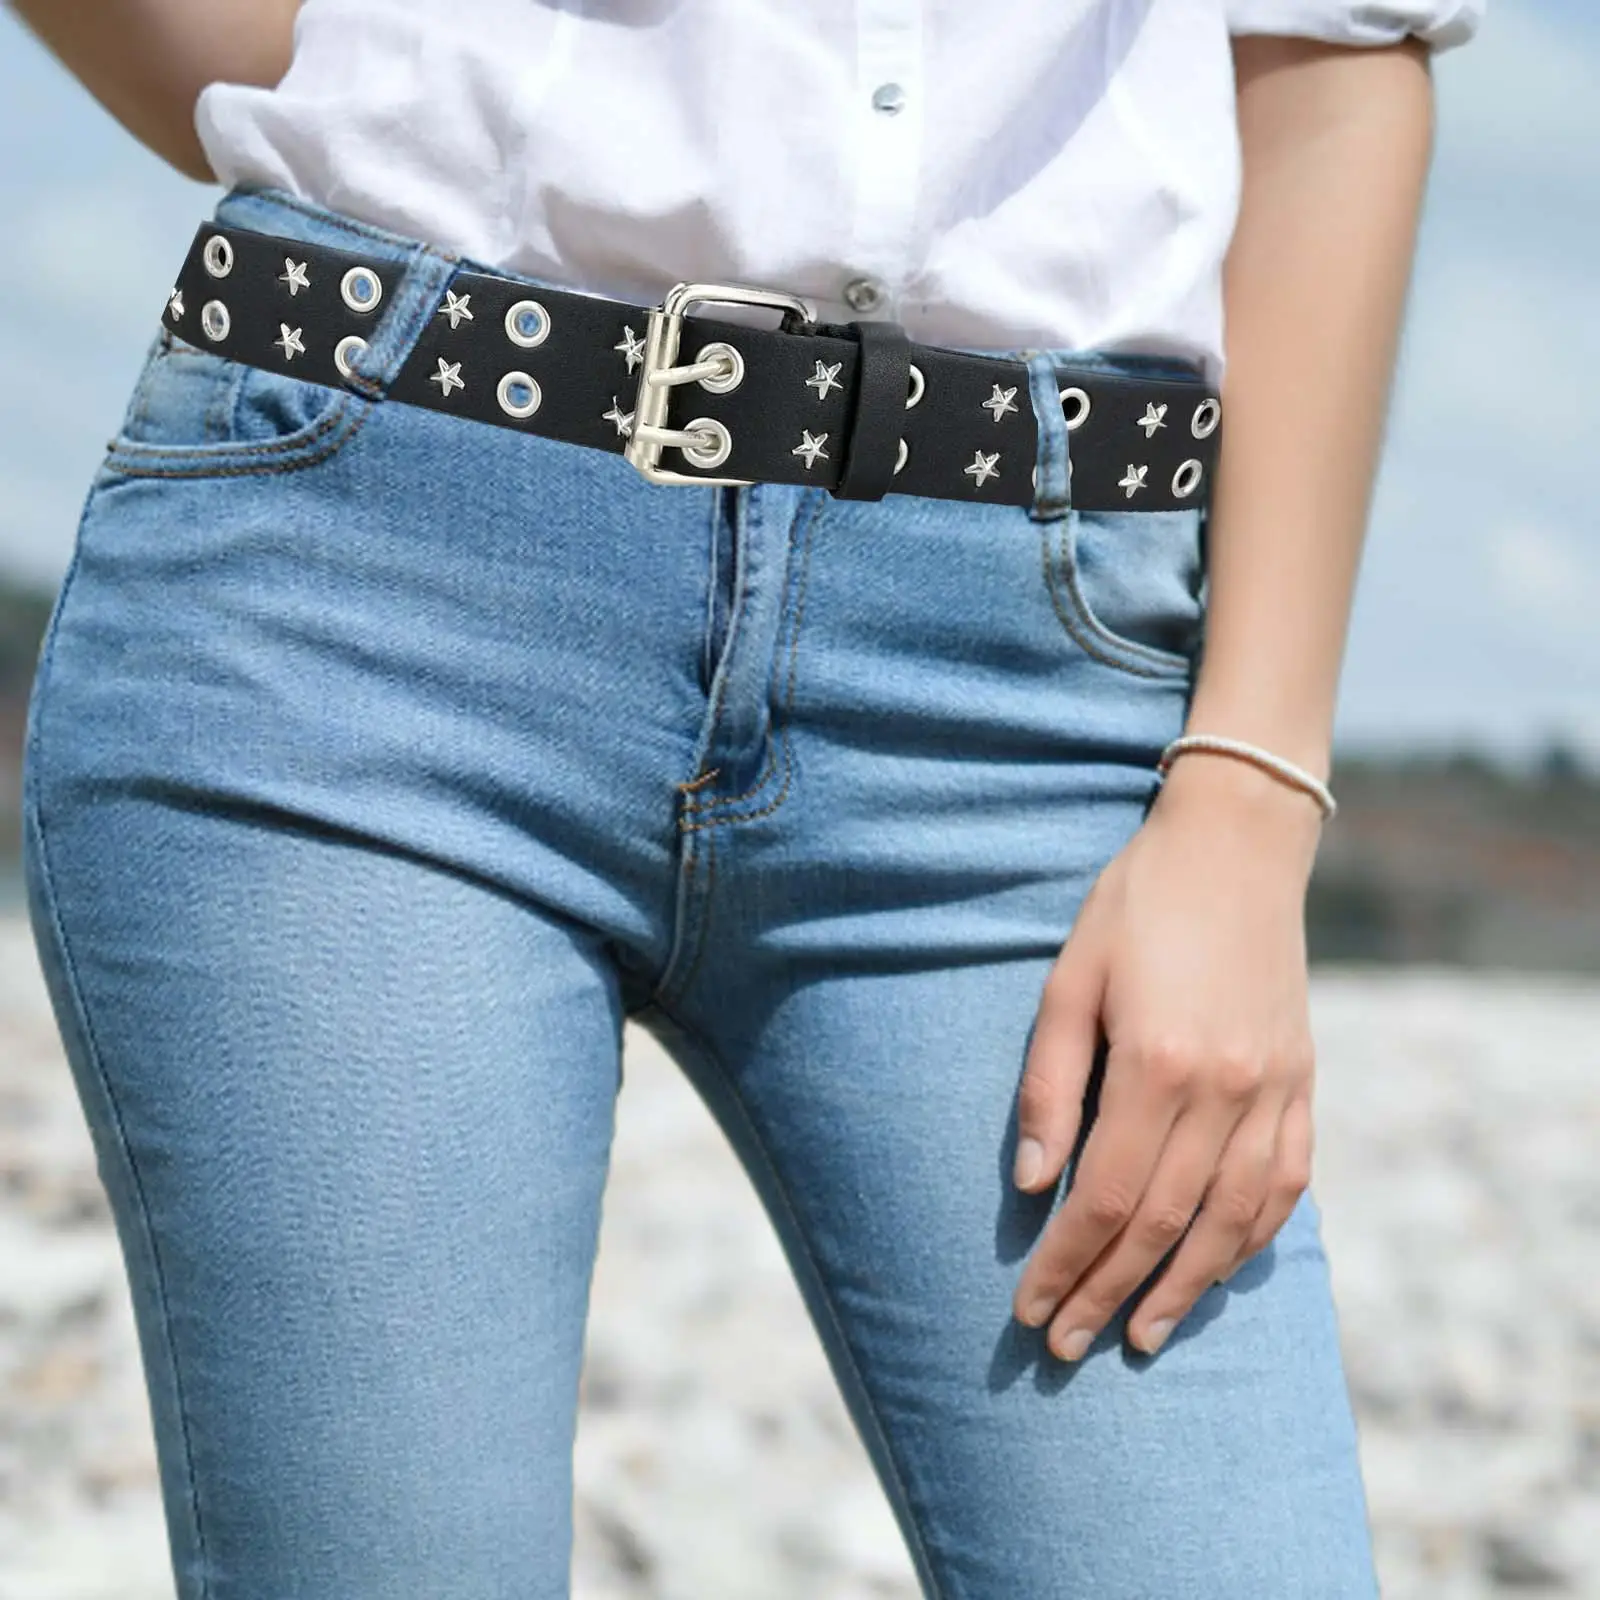 Unisex Punk Belt 2 Hole Grommet Jeans Adjustable Decorative Belt Casual Pin Buckle Gothic Waist Belt